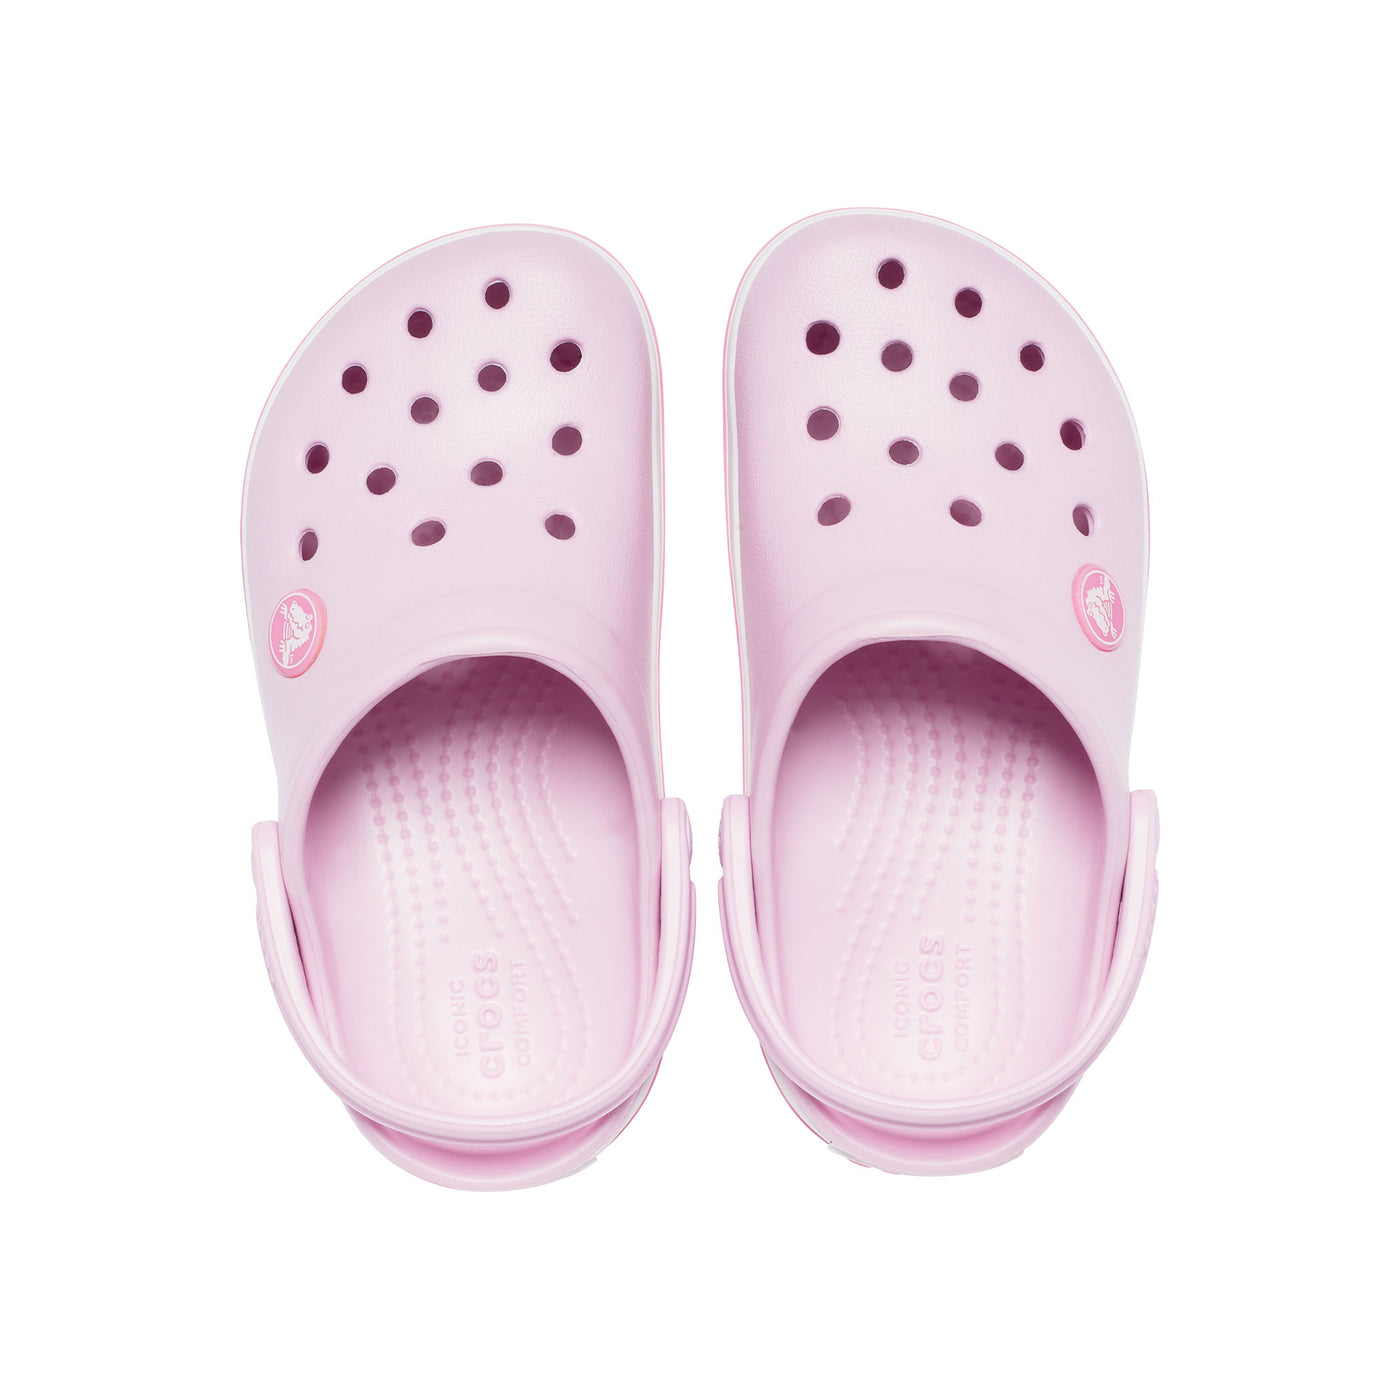 Giày Clog Trẻ Em Crocs Toddler Crocband - Ballerina Pink